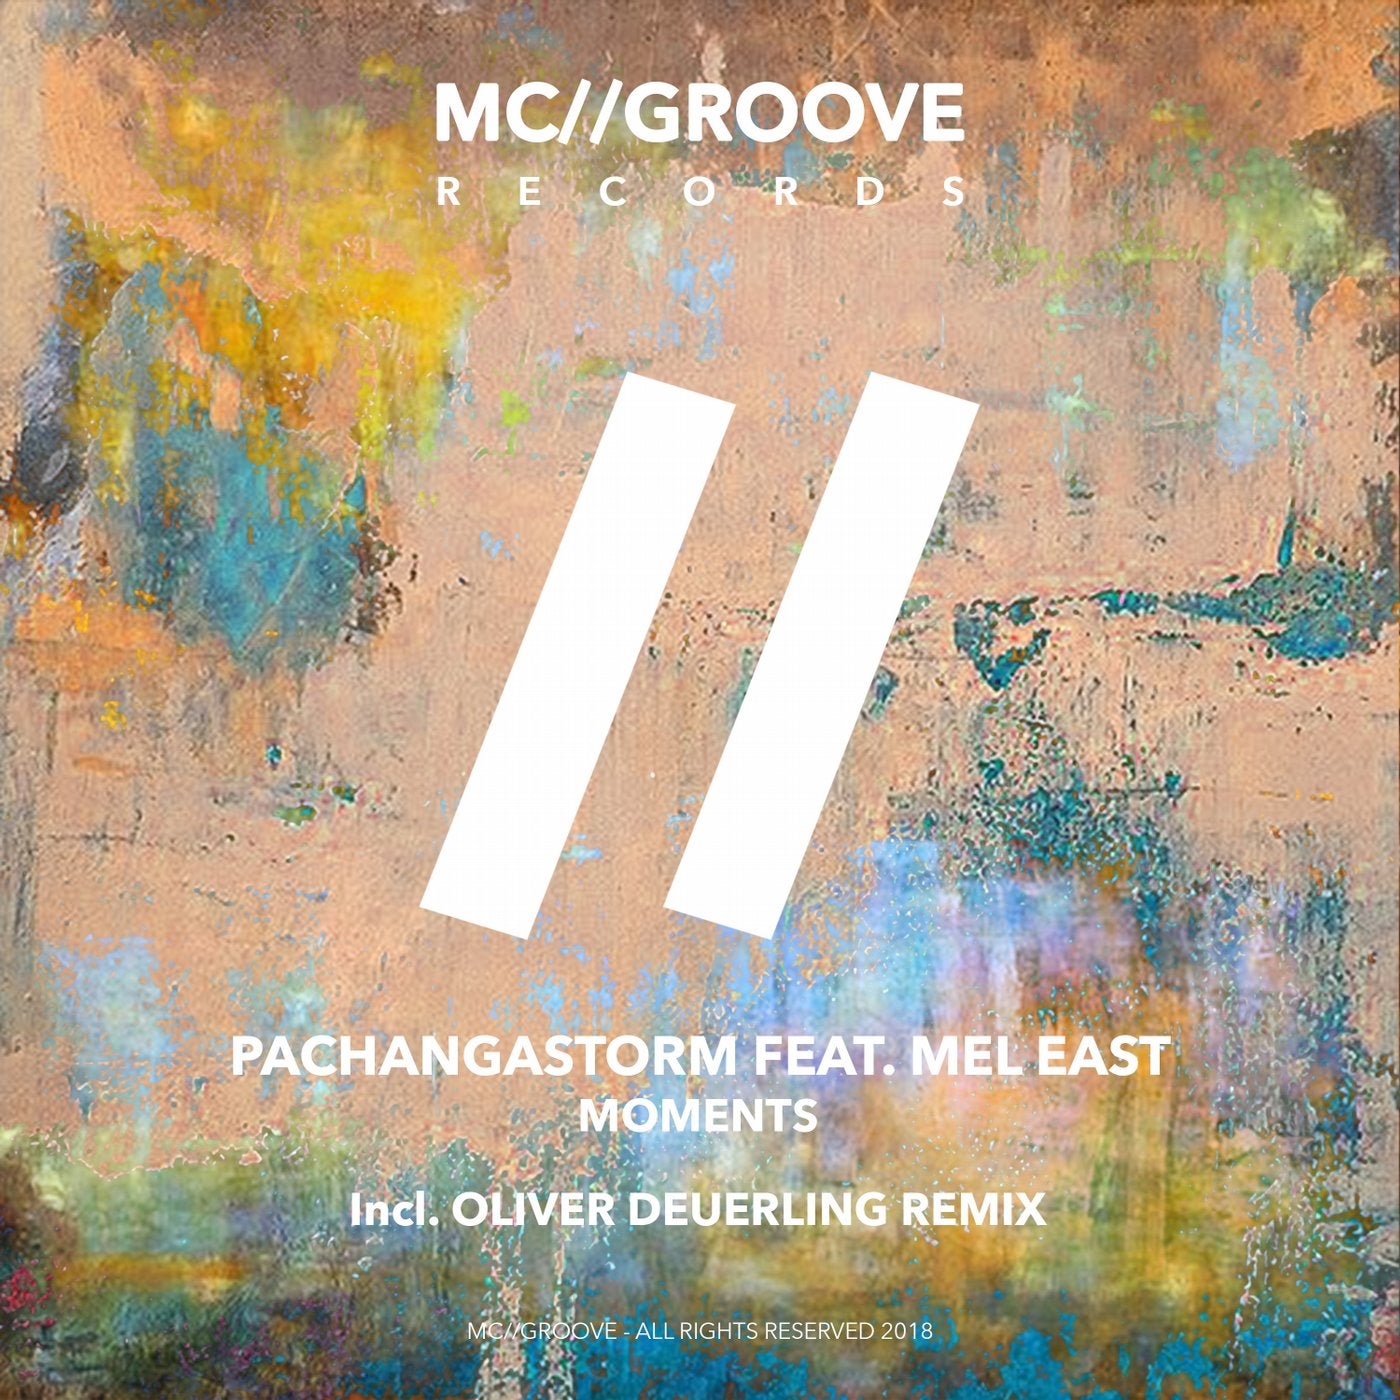 PachangaStorm music download - Beatport